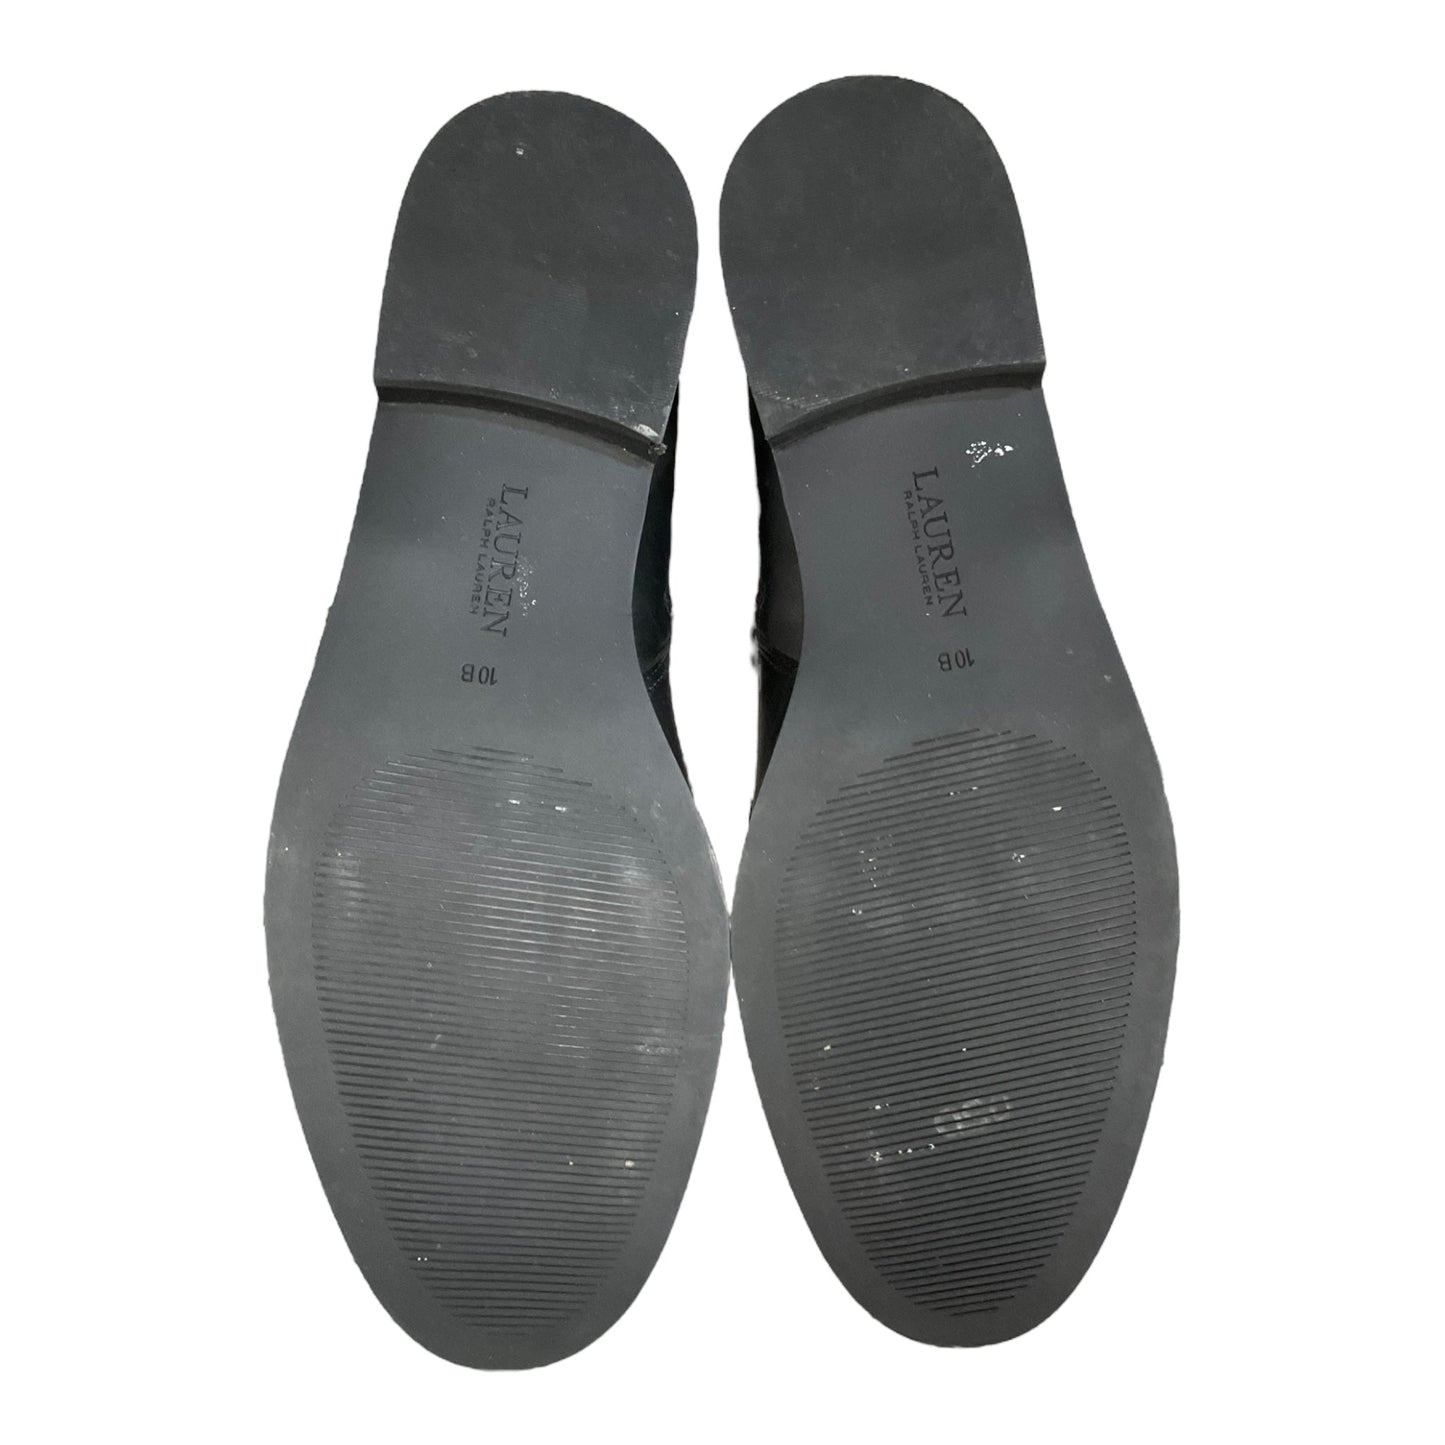 Black Boots Ankle Flats Lauren By Ralph Lauren, Size 10